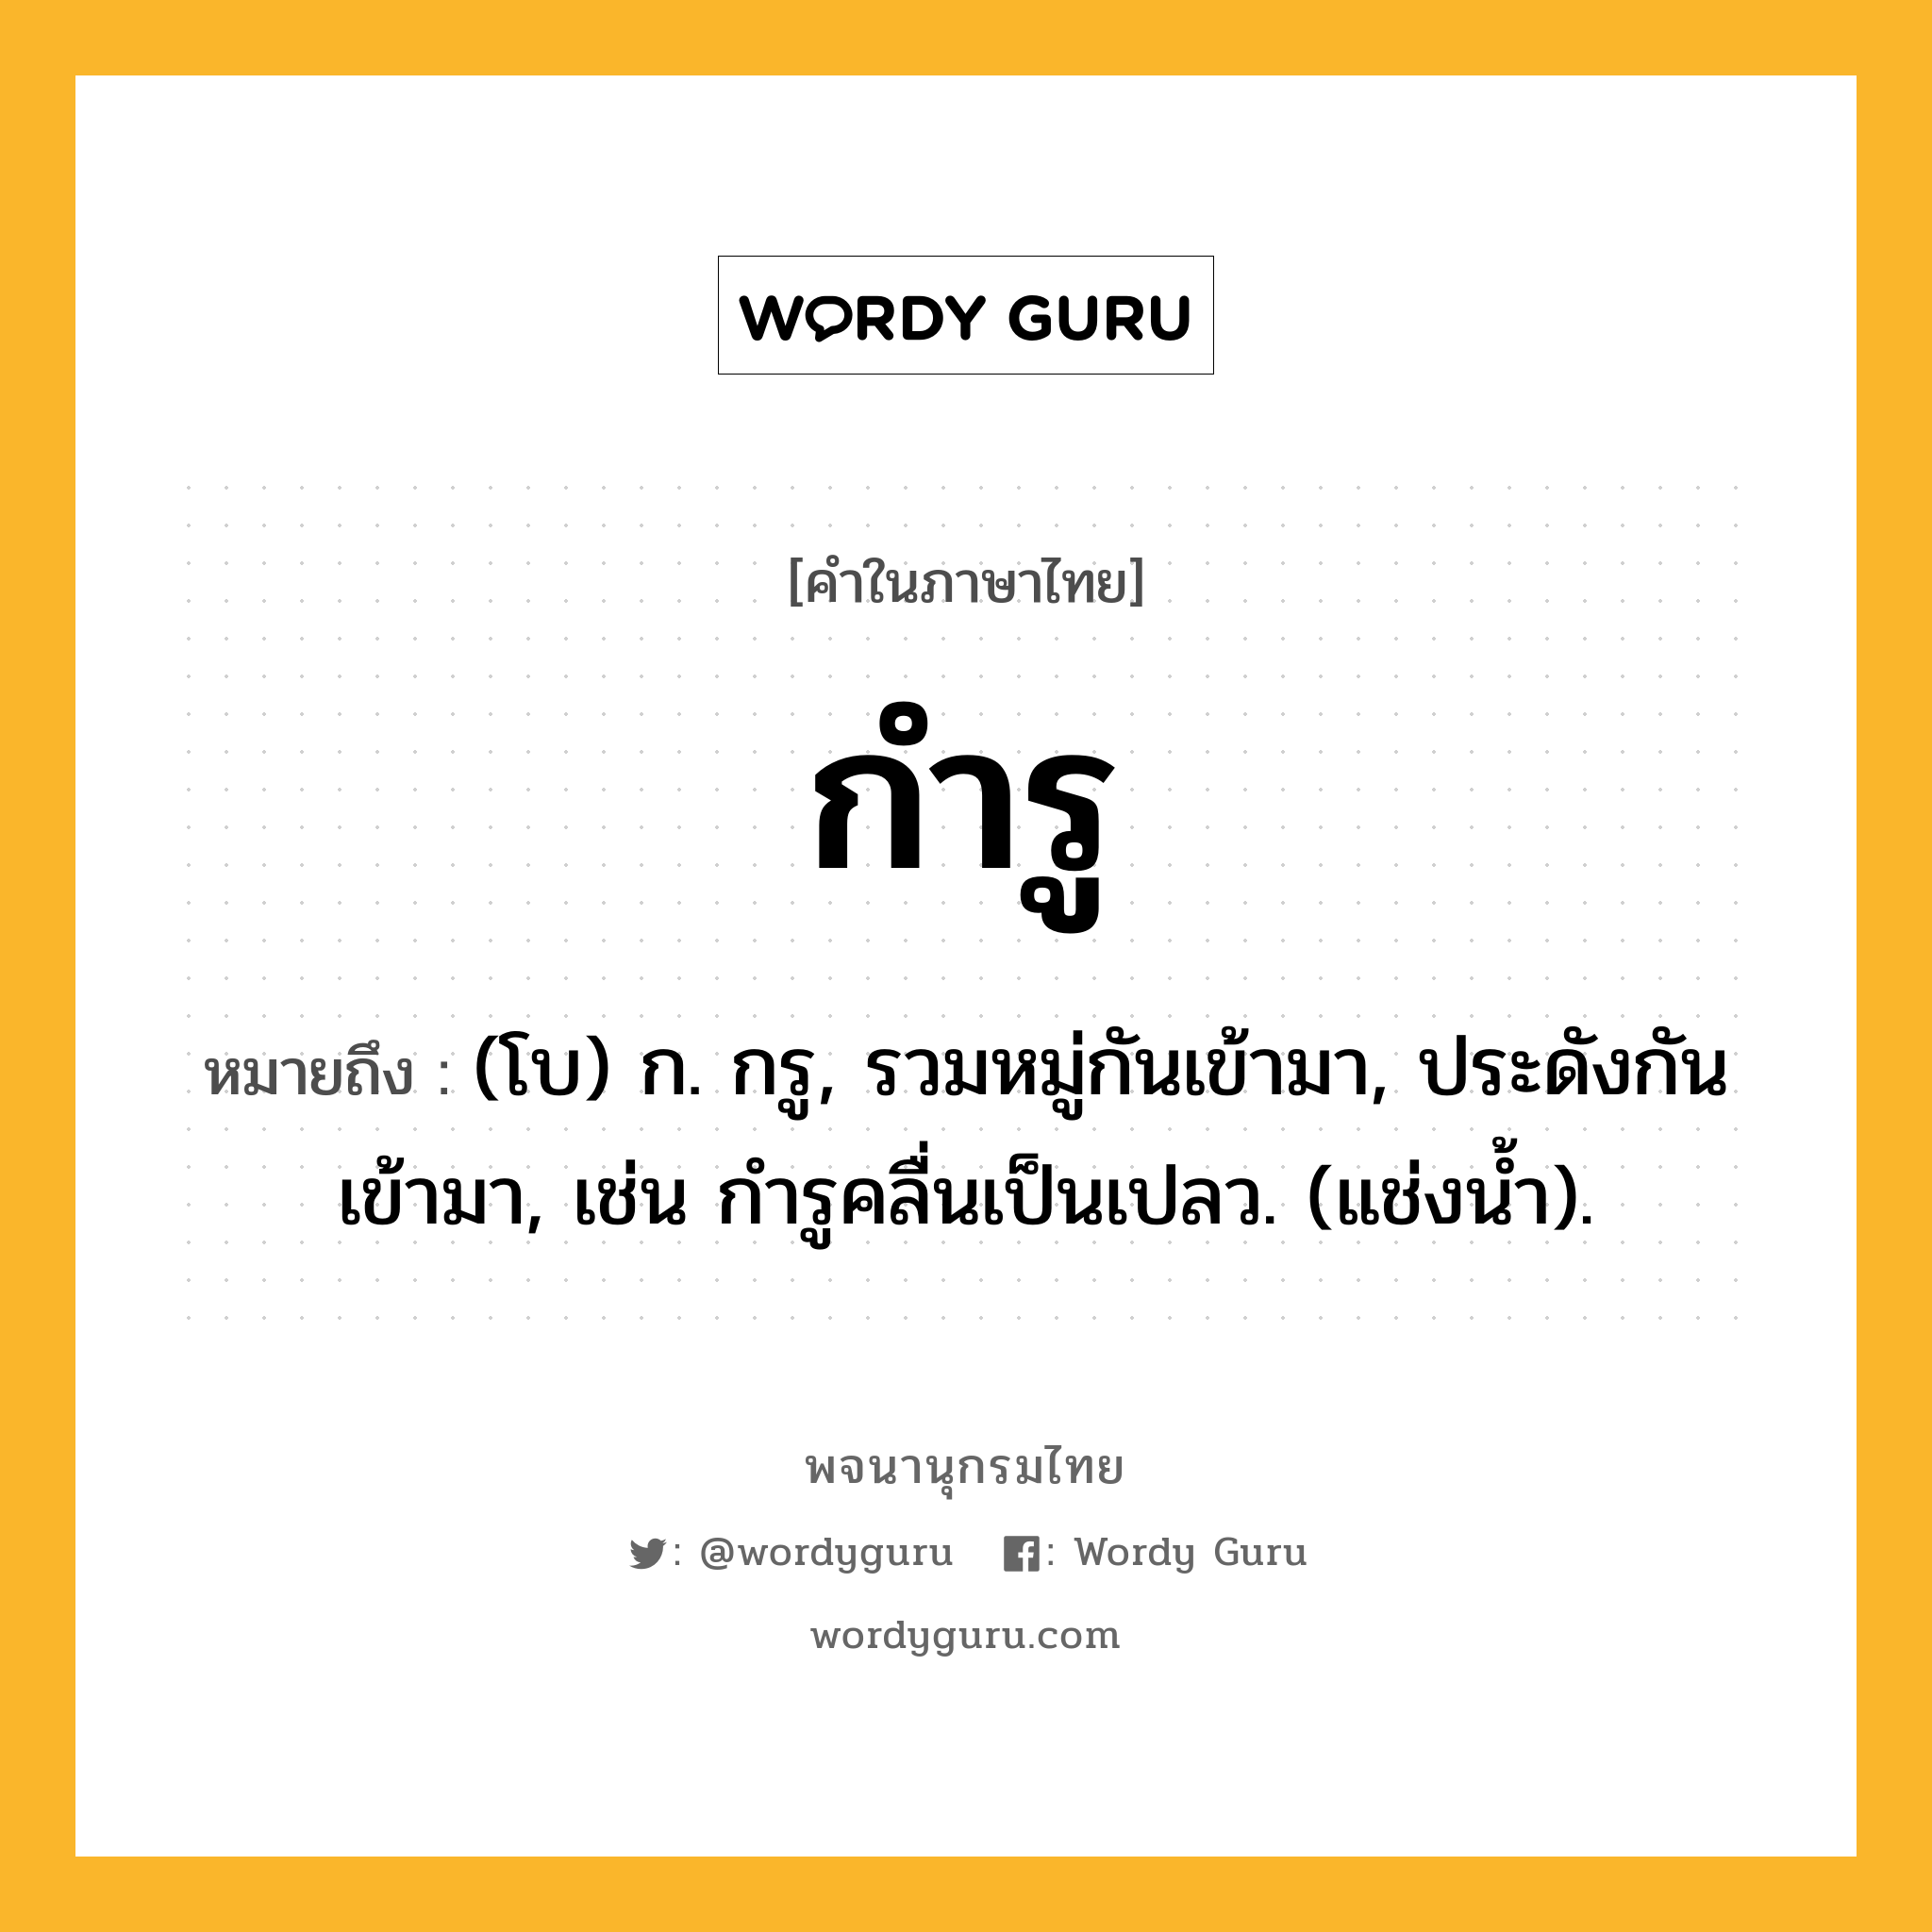 กำรู ความหมาย หมายถึงอะไร?, คำในภาษาไทย กำรู หมายถึง (โบ) ก. กรู, รวมหมู่กันเข้ามา, ประดังกันเข้ามา, เช่น กํารูคลื่นเป็นเปลว. (แช่งนํ้า).